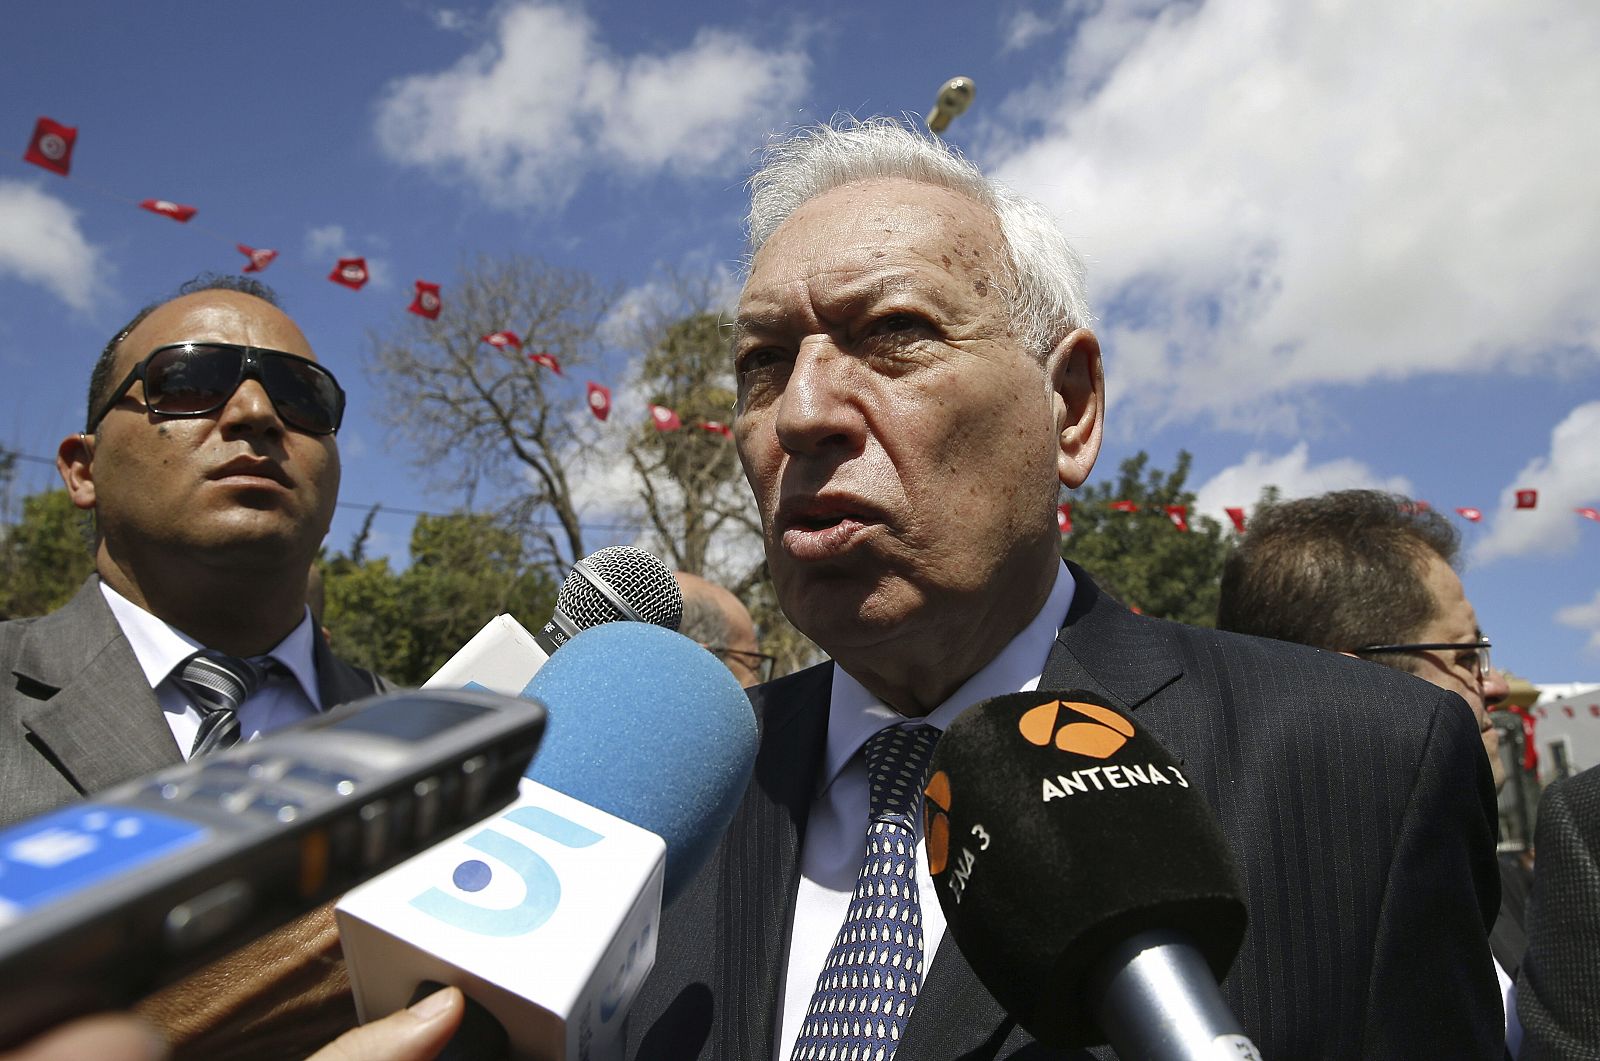 El ministro de Asuntos Exteriores español, José Manuel García-Margallo, atiende a los medios durante su participación en la protesta convocada por el Gobierno tunecino contra el terrorismo yihadista.